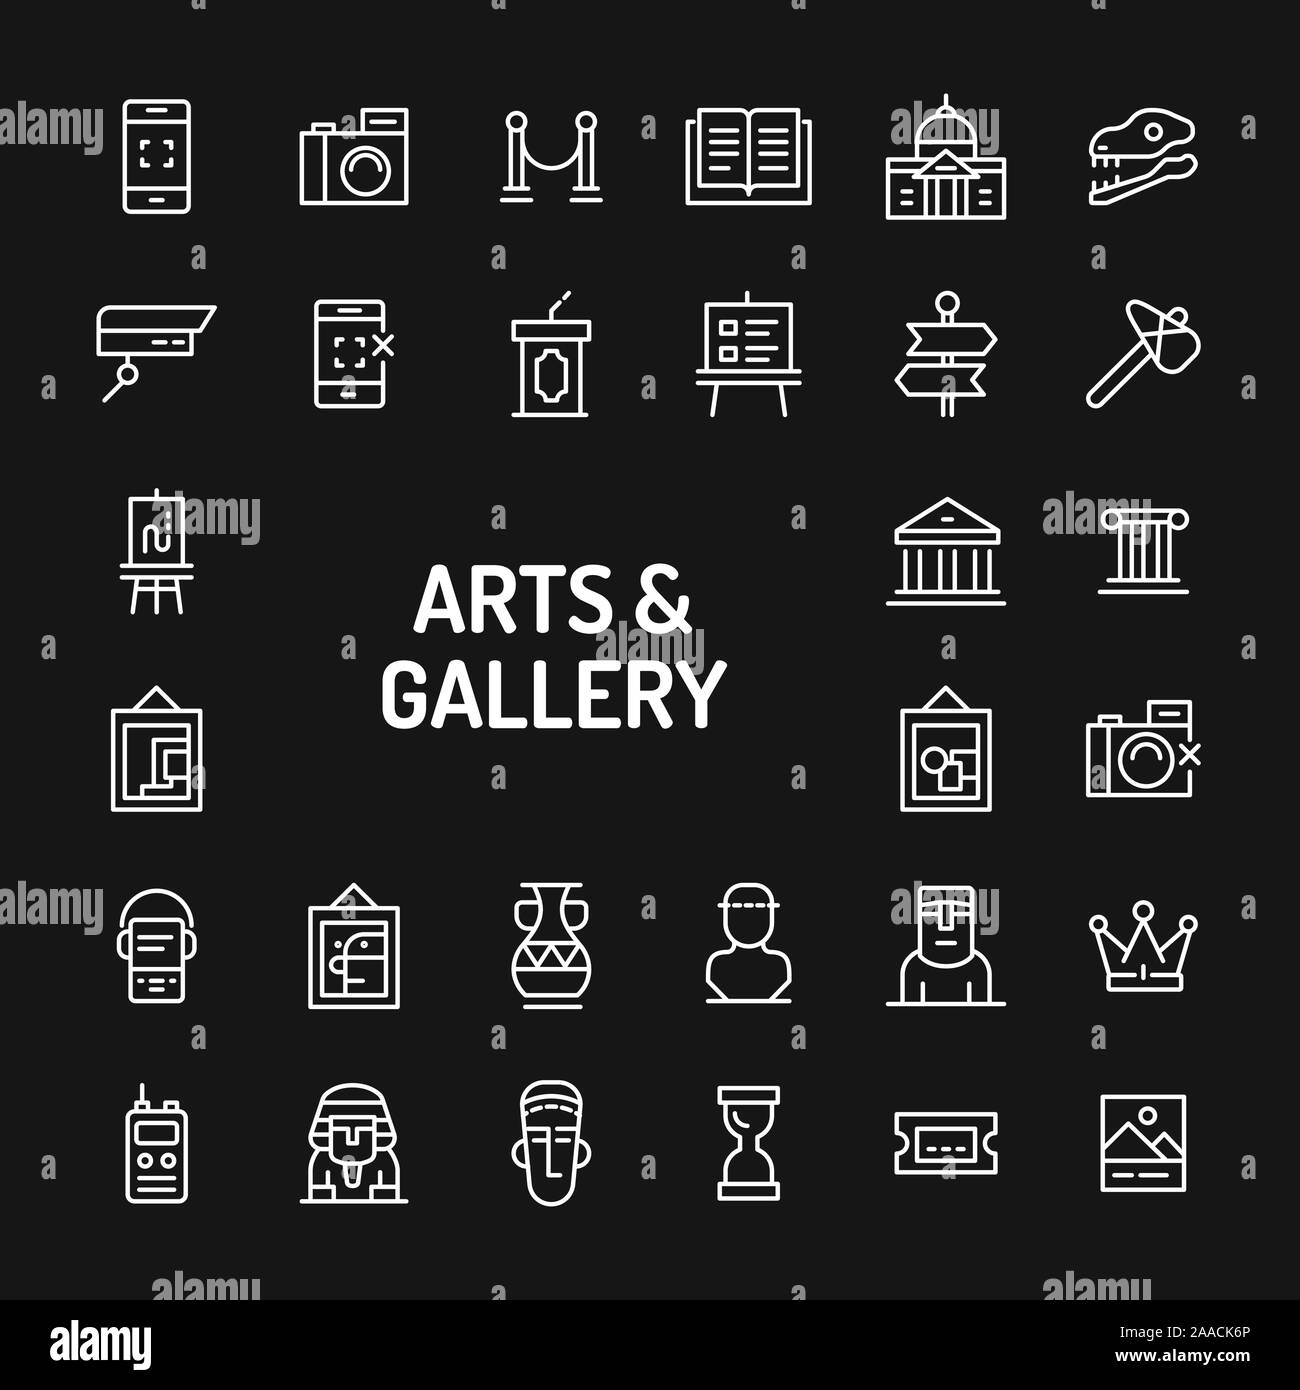 Einfache weiße Zeile für Symbole über schwarzen Hintergrund zu Arts Gallery und das historische Museum im Zusammenhang isoliert. Vektor Zeichen und Symbole Sammlungen für Website Stock Vektor